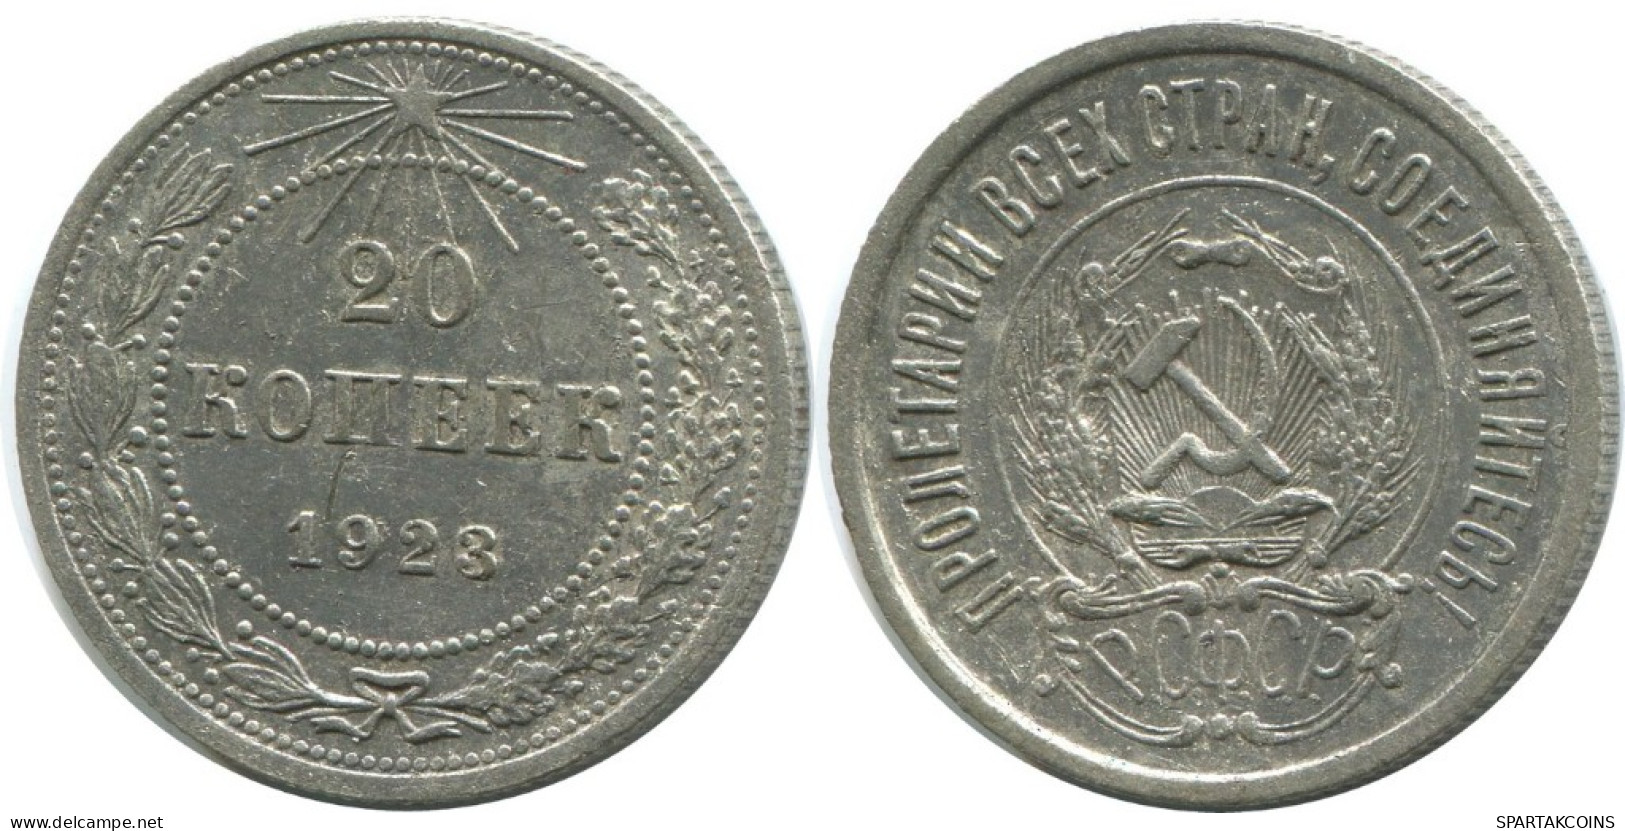 20 KOPEKS 1923 RUSIA RUSSIA RSFSR PLATA Moneda HIGH GRADE #AF416.4.E.A - Russland